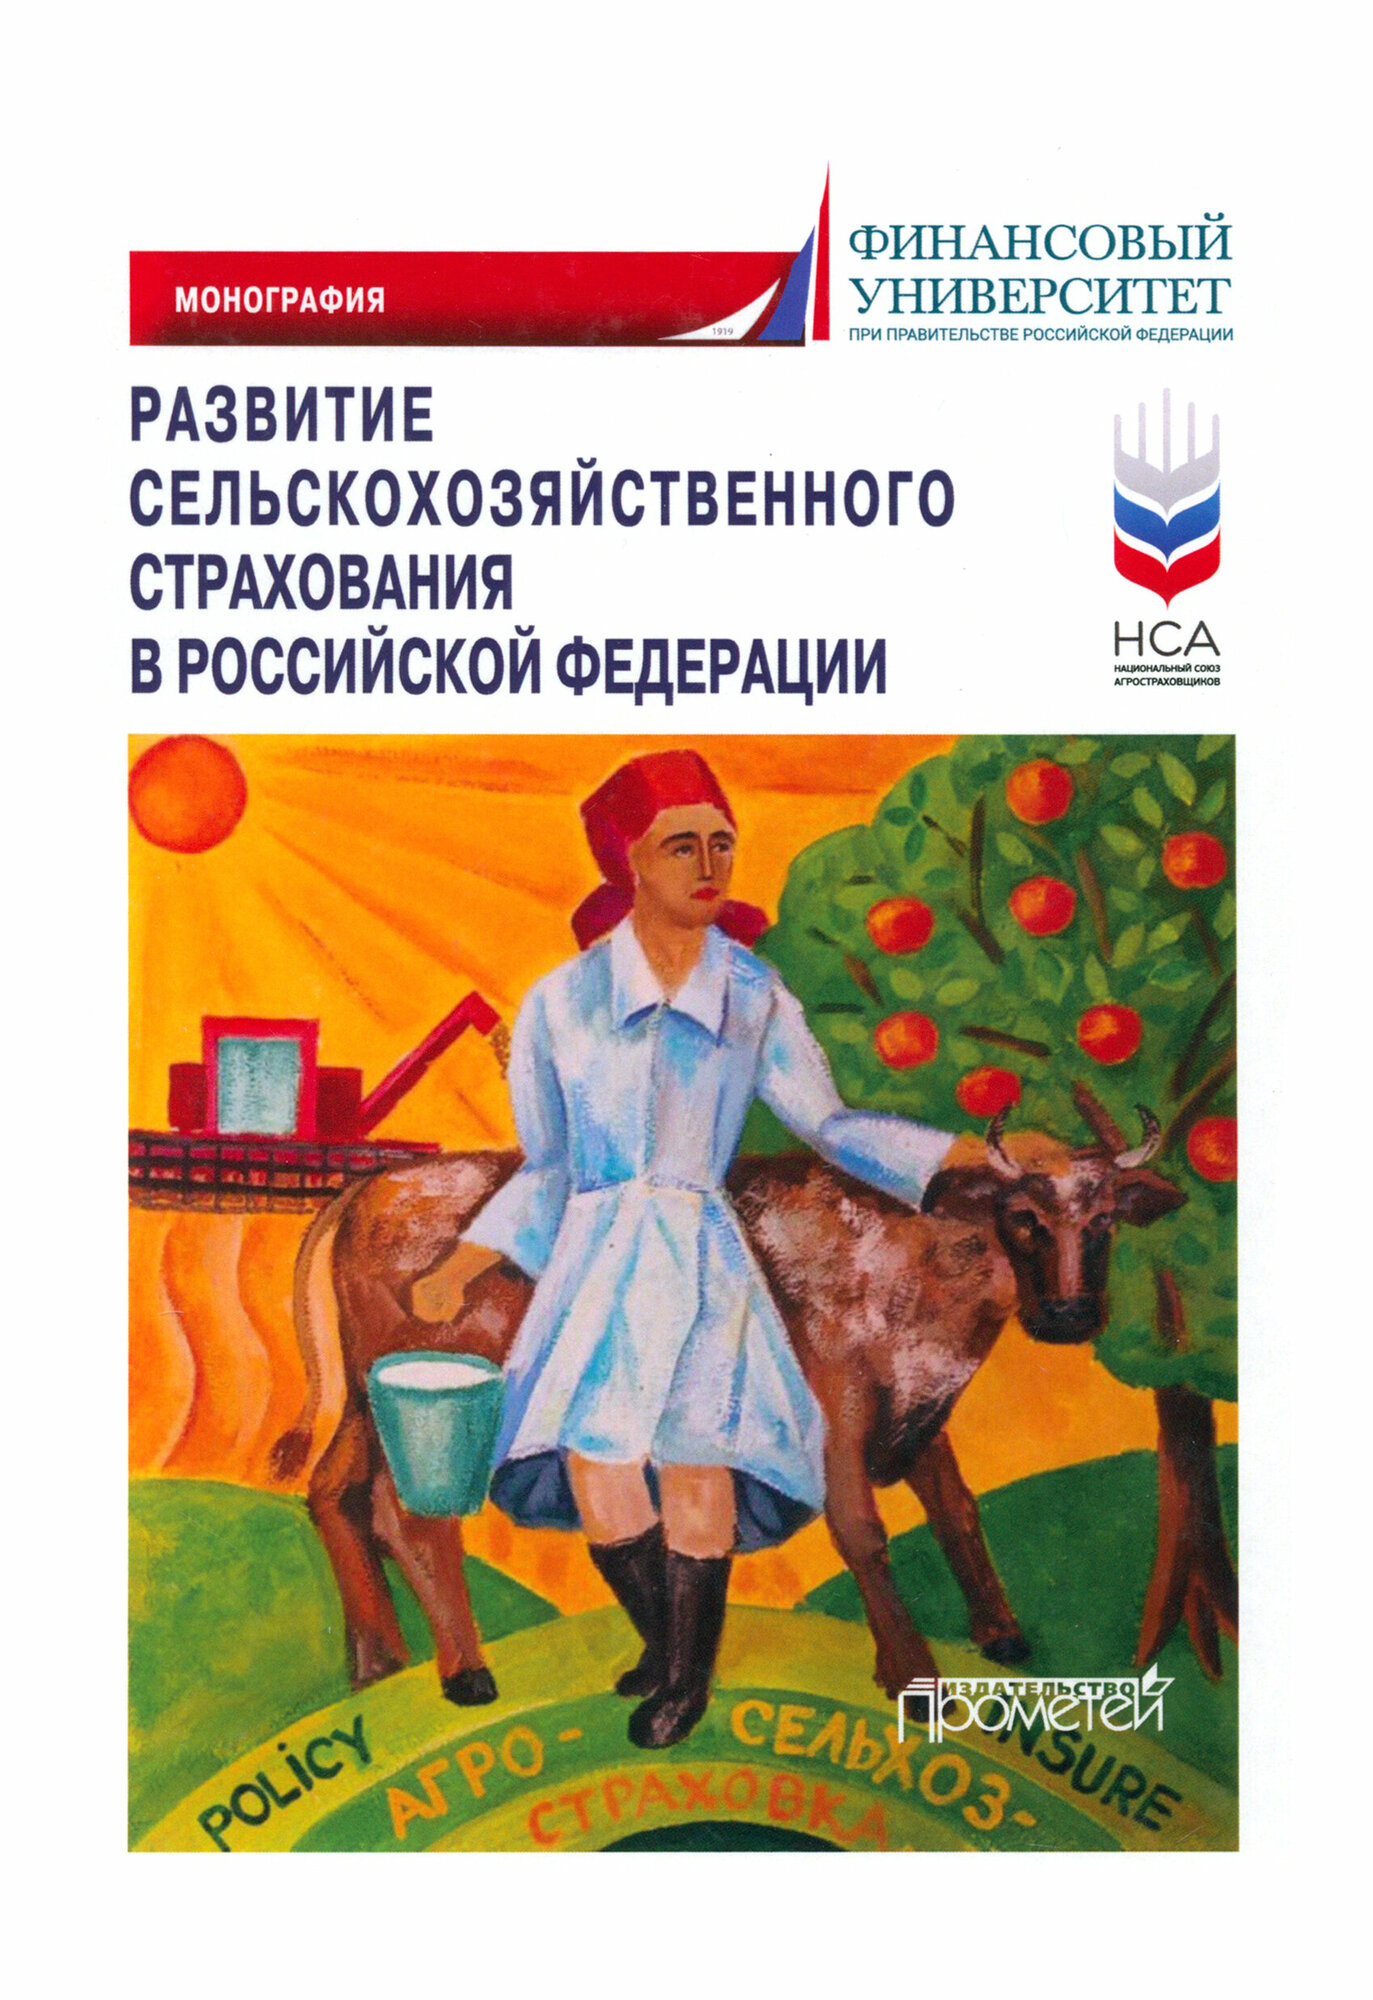 Развитие сельскохозяйственного страхования в Российской Федерации. Монография - фото №1